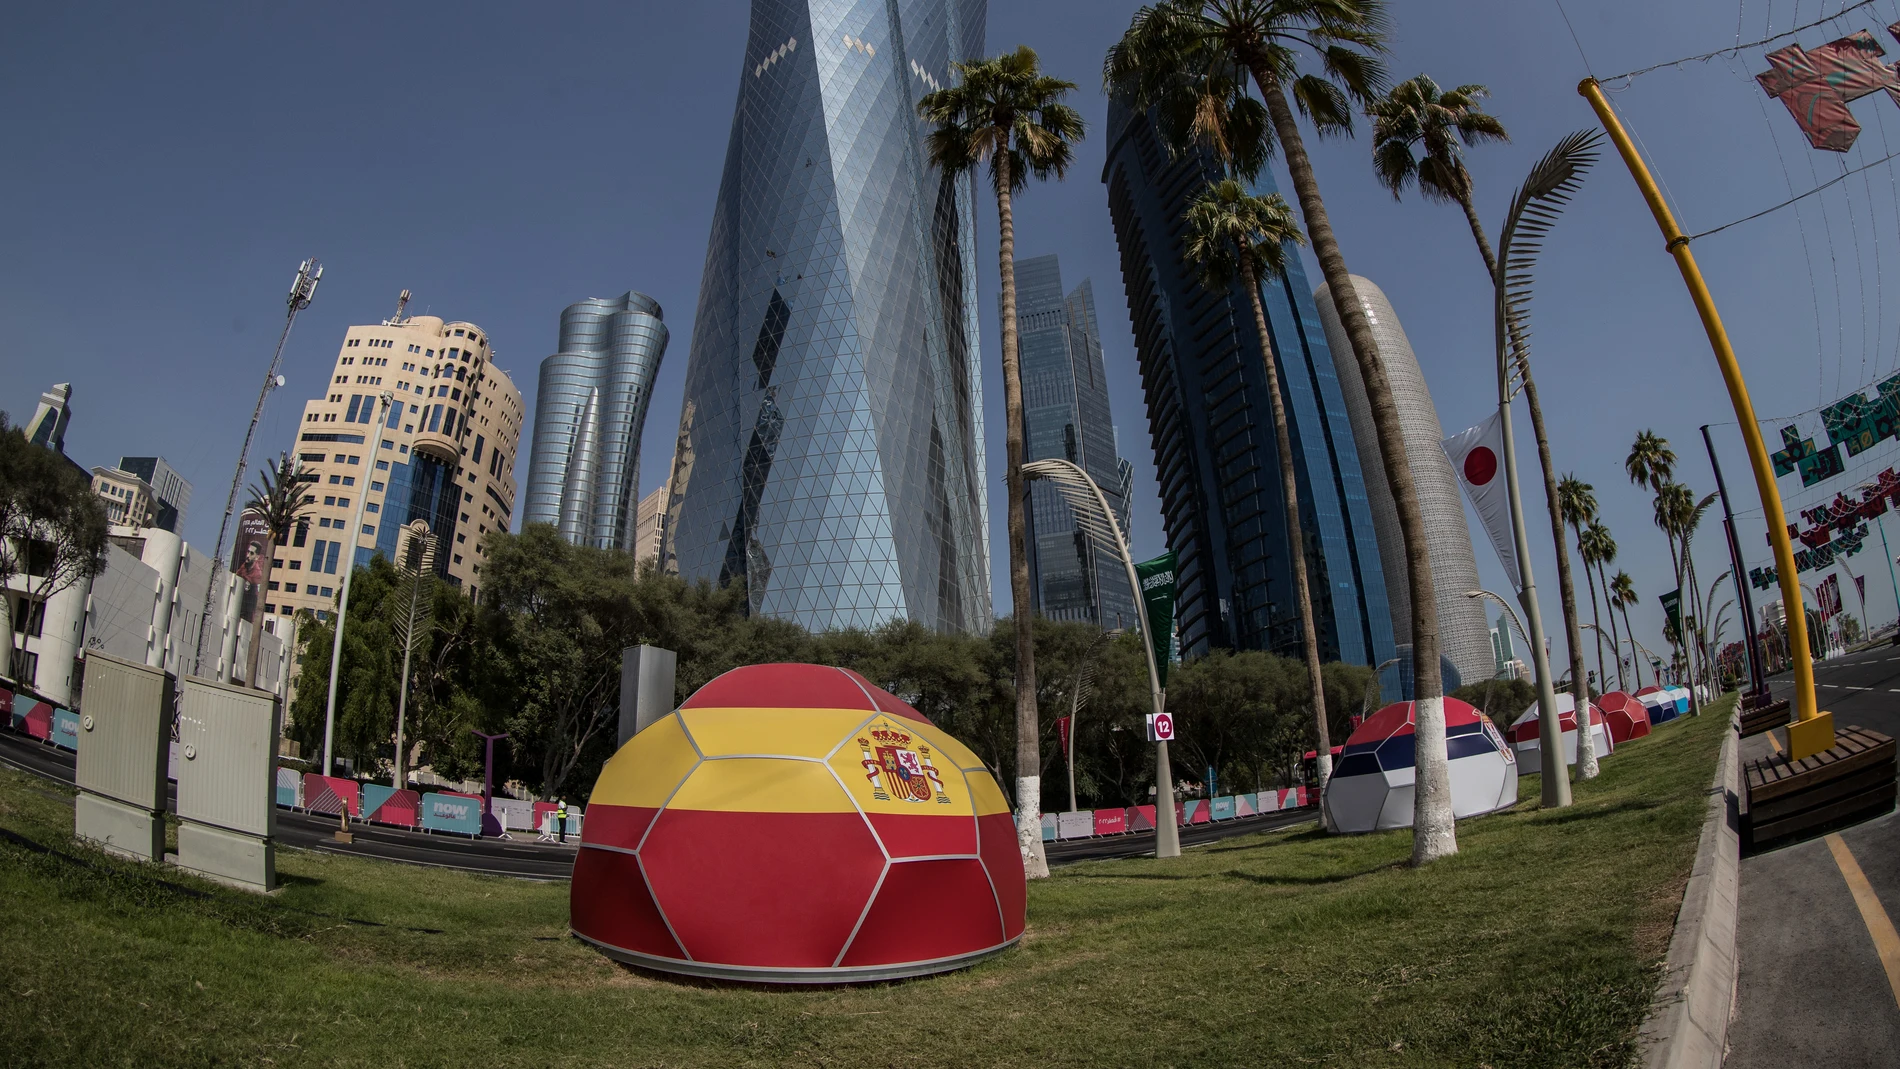 Estructuras que forman balones con las banderas de la selecciones participantes en el mundial de Qatar 2022 dan la bienvenida a los aficionados a pocas horas del inicio de la competición. EFE/ Esteban Biba